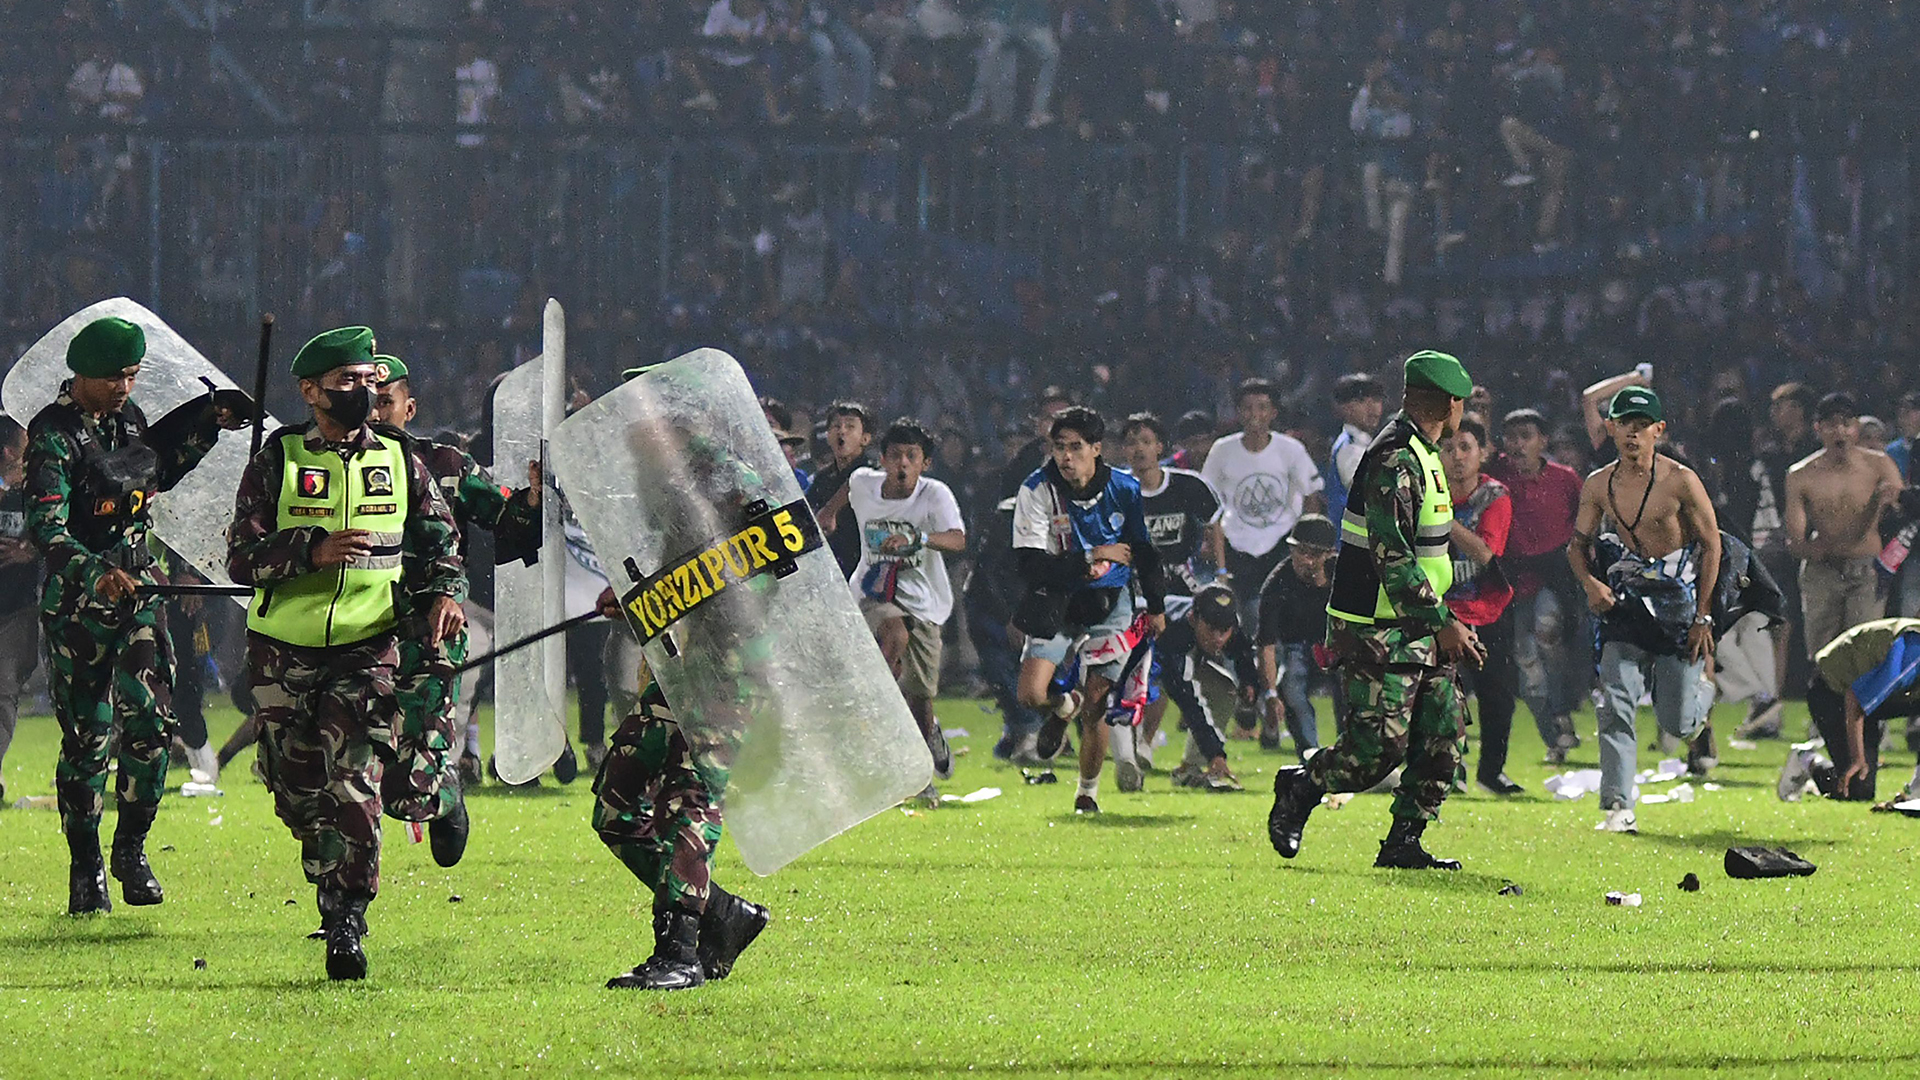 Setelah kepanikan massal di lapangan sepak bola: Pejabat dilarang seumur hidup